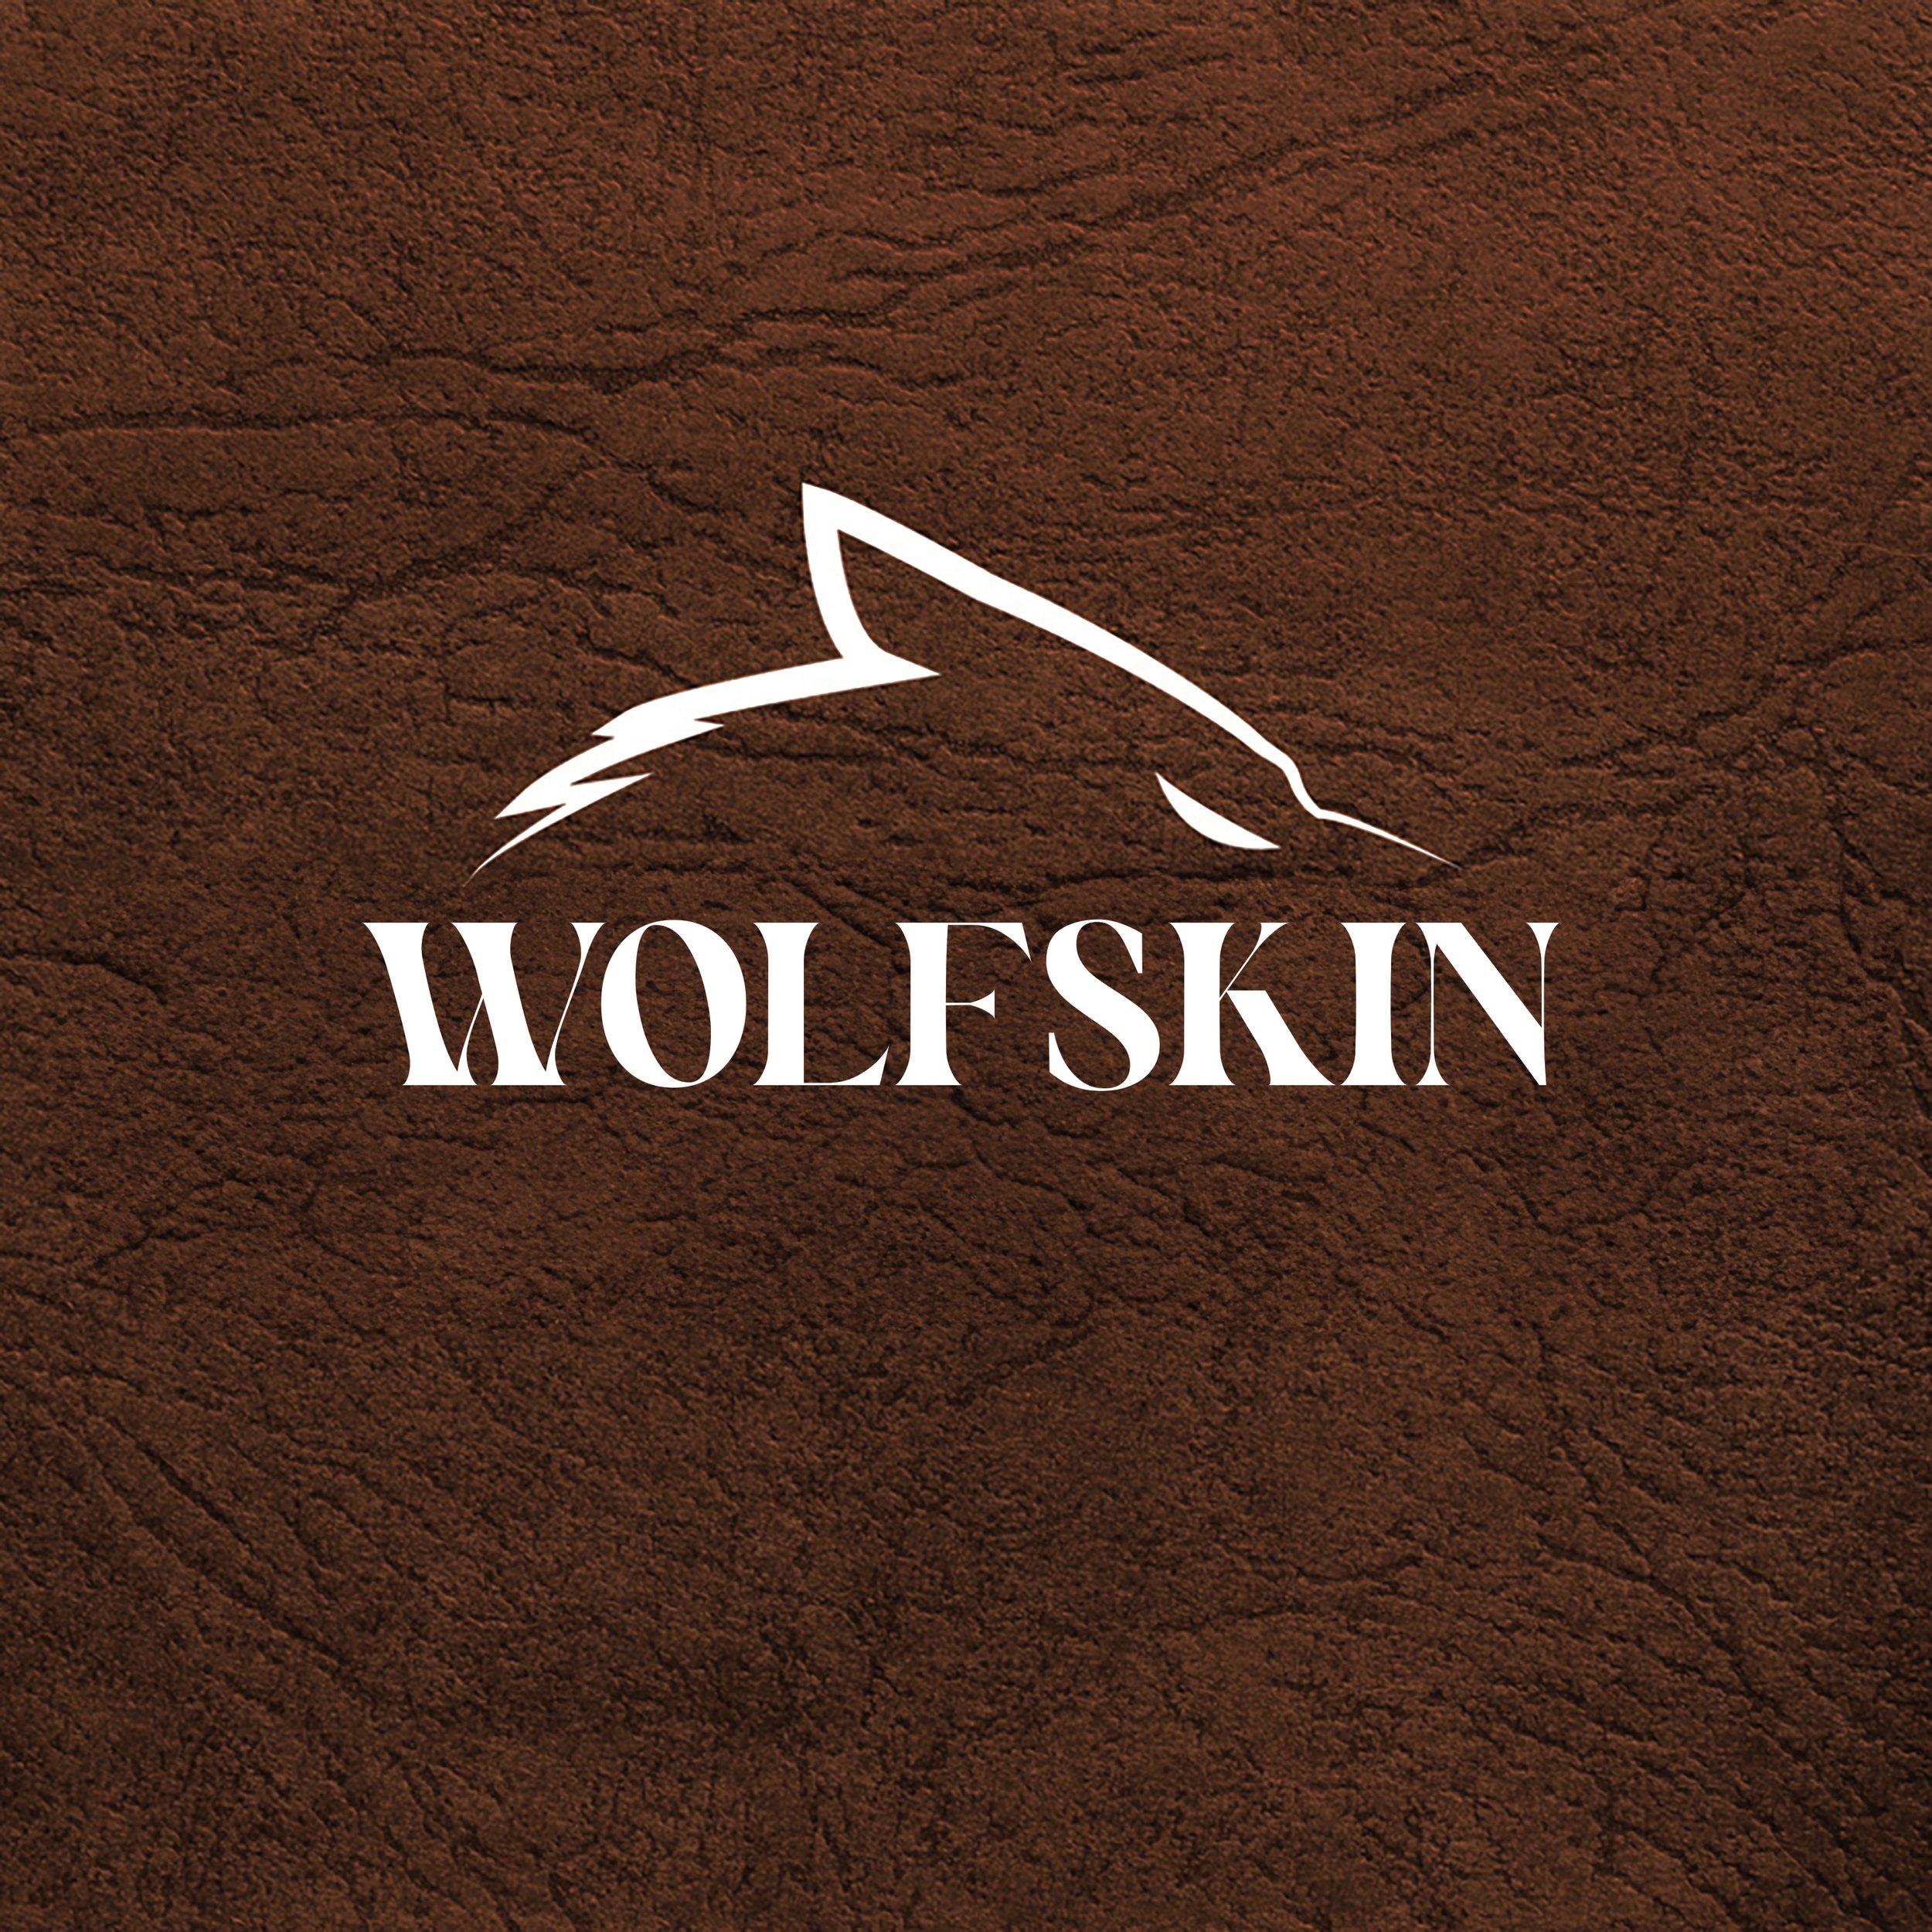 WolfSkin.jpg